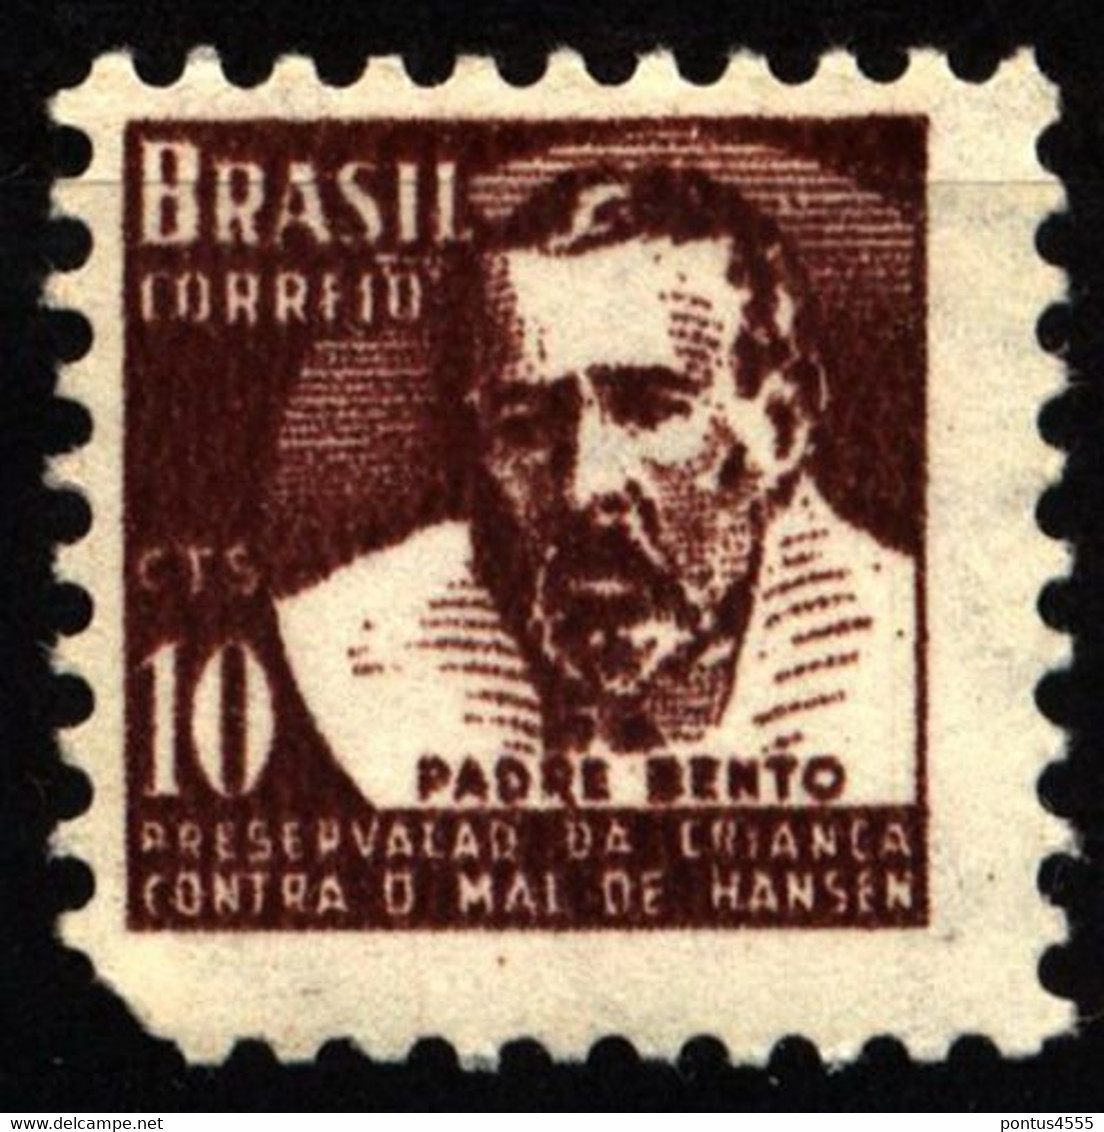 Brazil 1962 Mi Z10 Campaign Against Leprosy - Padre Bento MNH - Postage Due